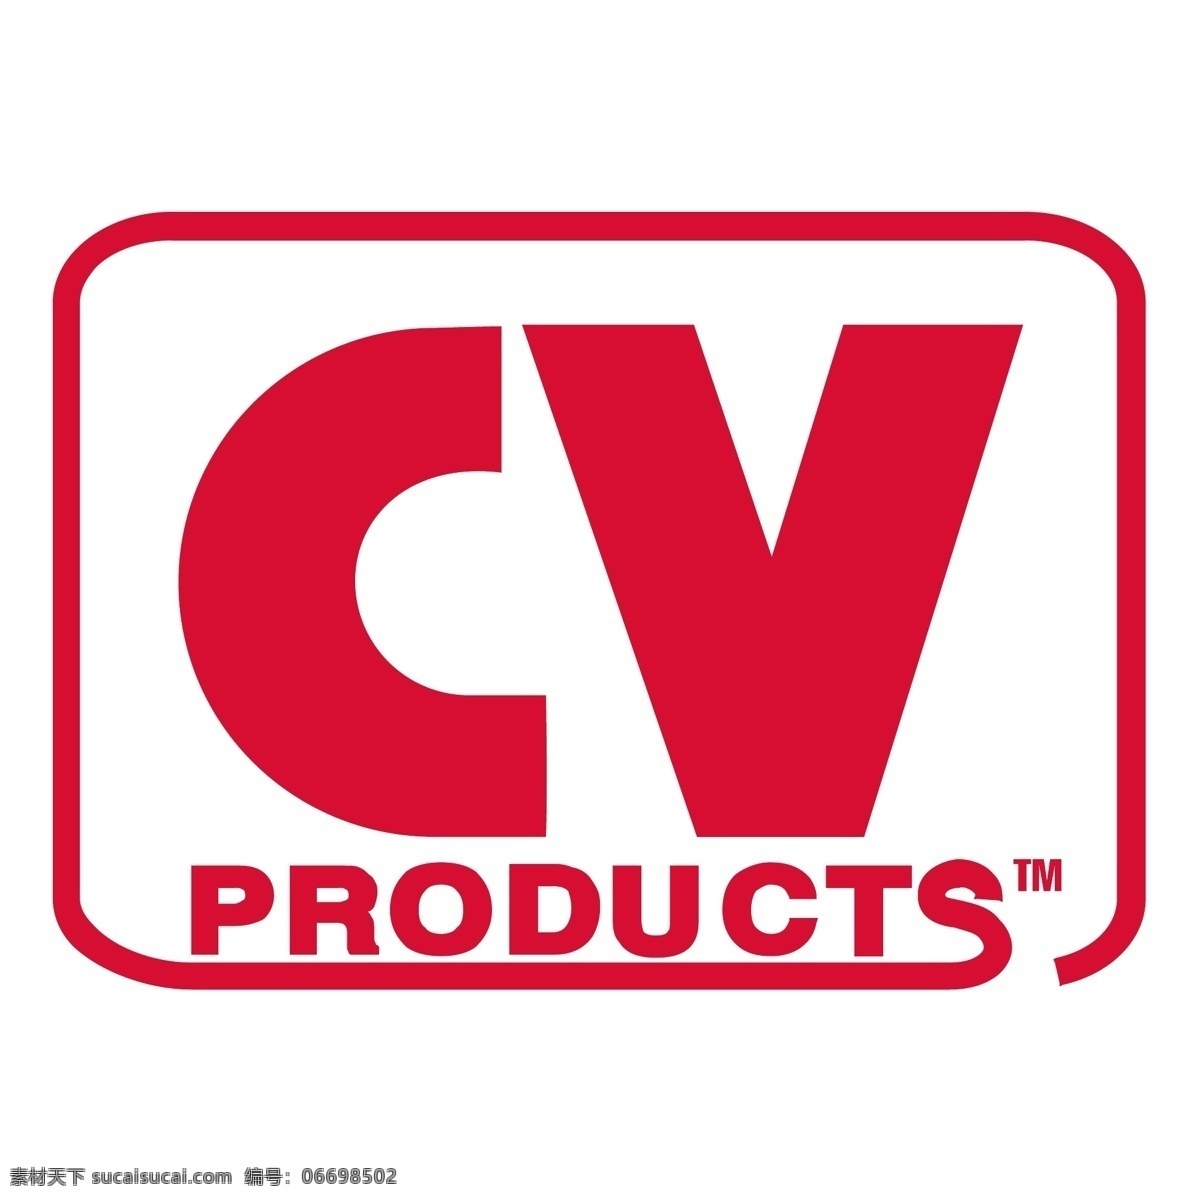 cv产品 简历 产品 标志 自由 白色